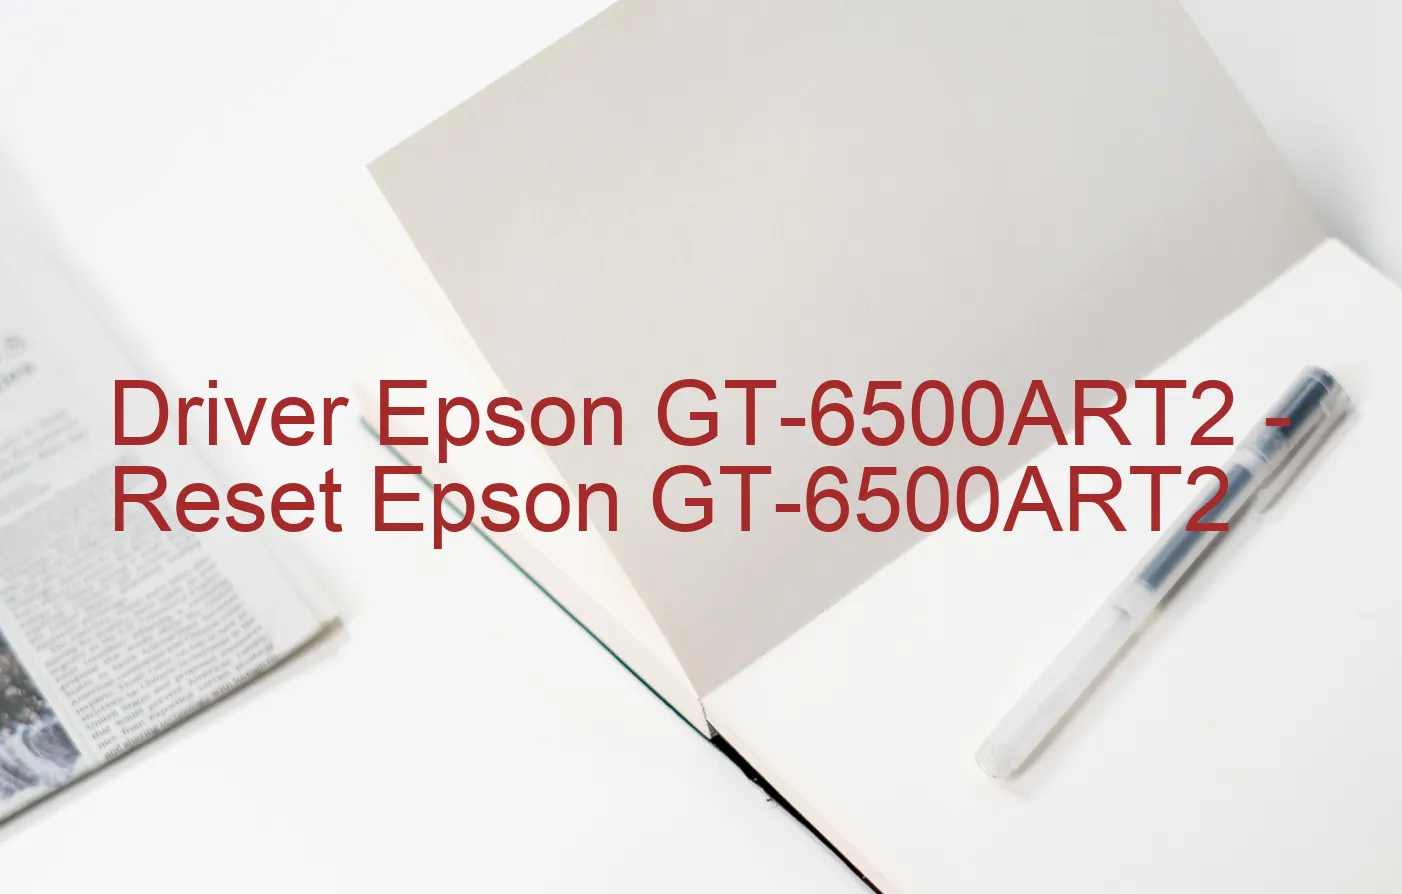 Epson GT-6500ART2のドライバー、Epson GT-6500ART2のリセットソフトウェア